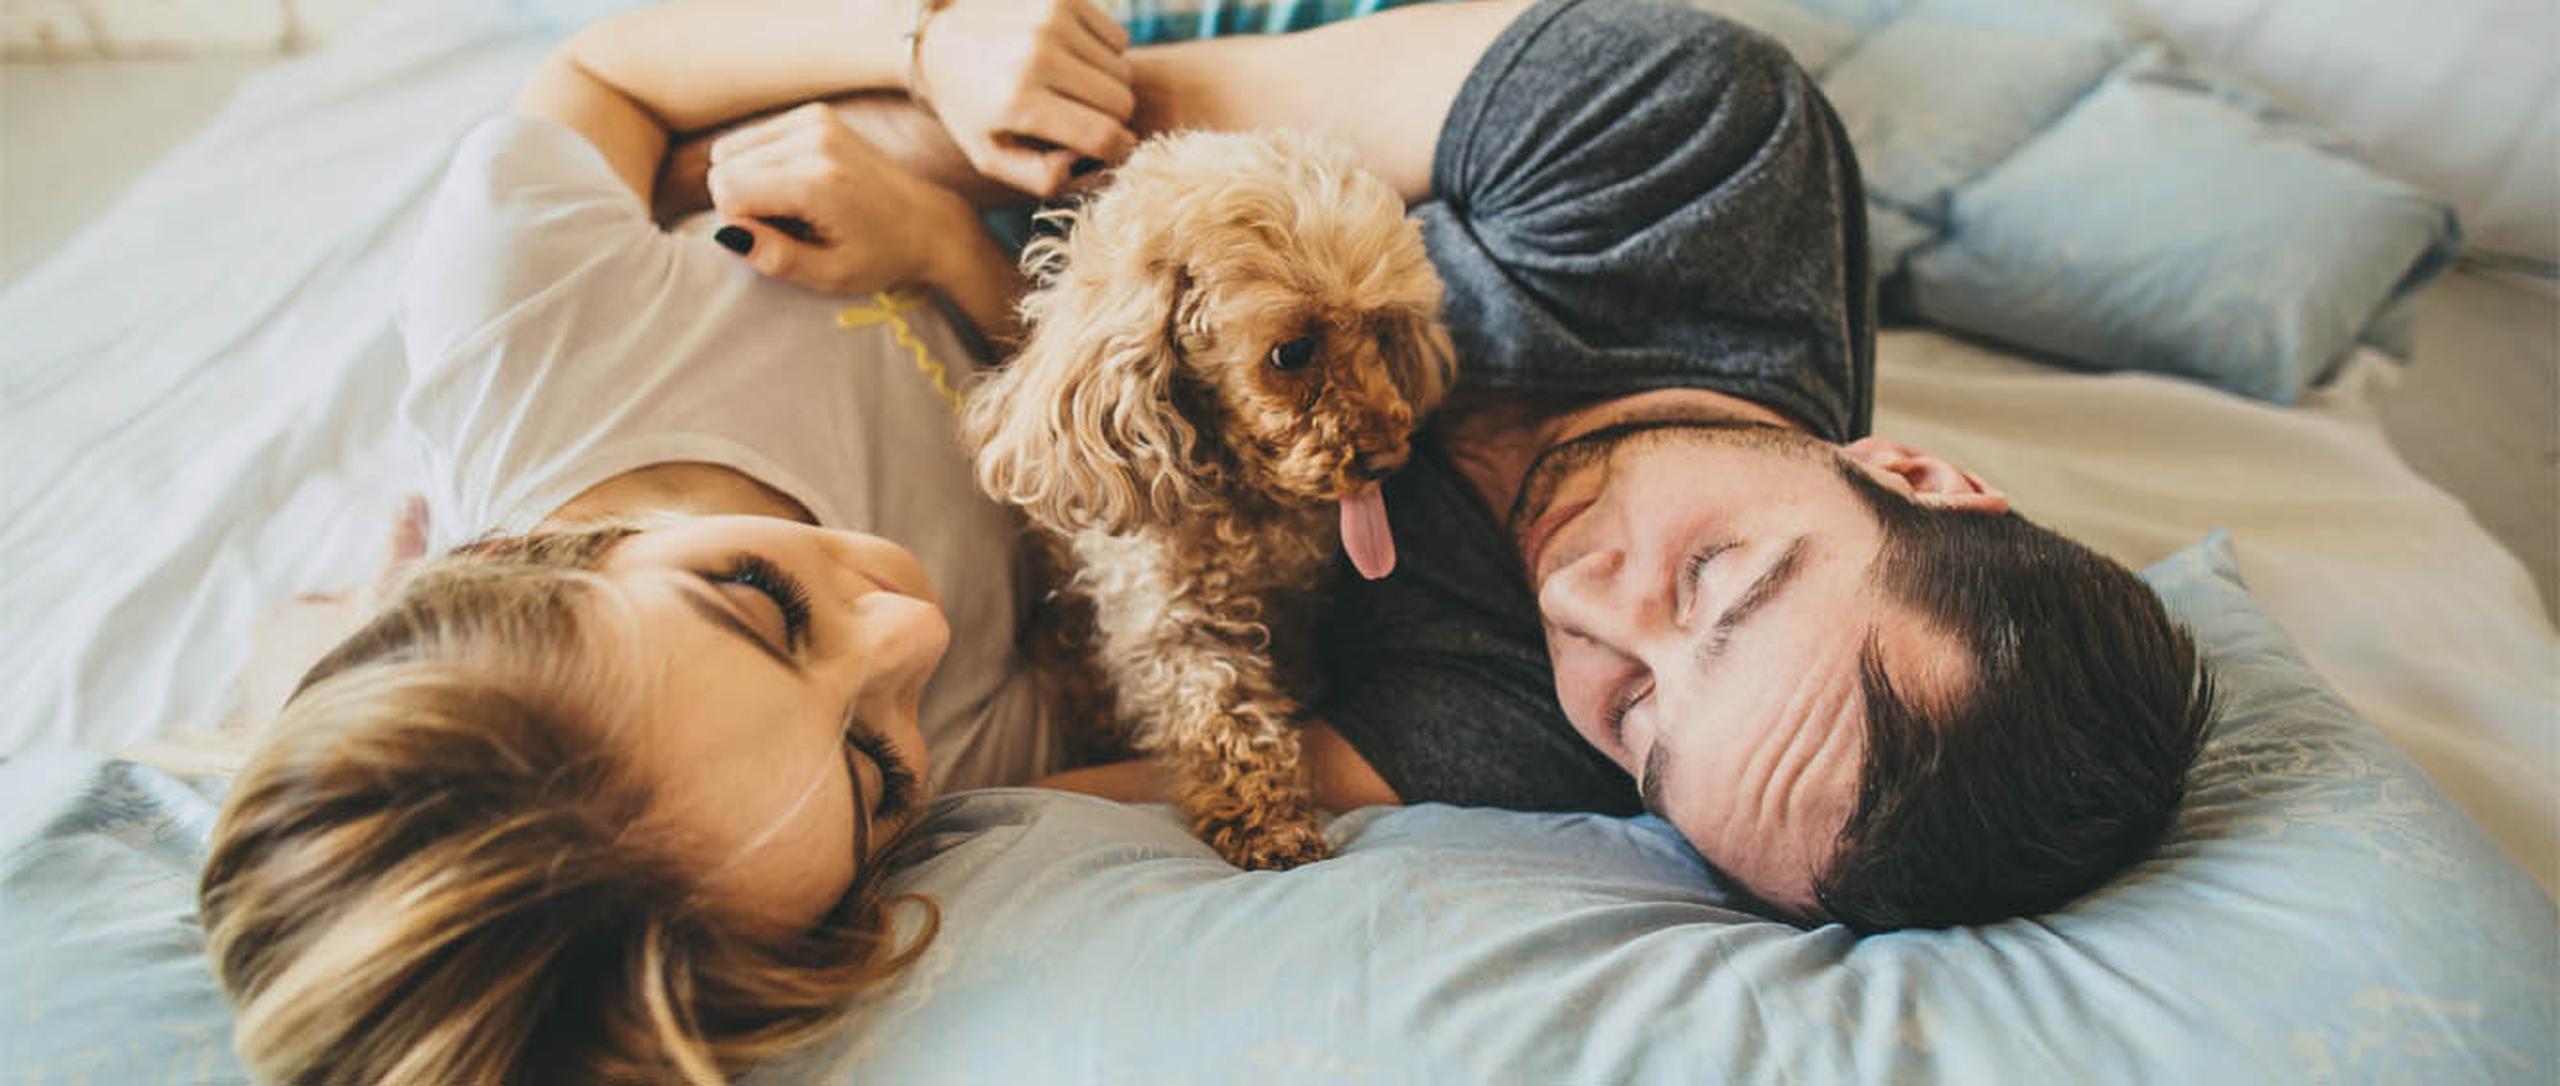 Tanto la pareja como la mascota son importantes, por lo cual se deben establecer límites y acuerdos. (Shutterstock)